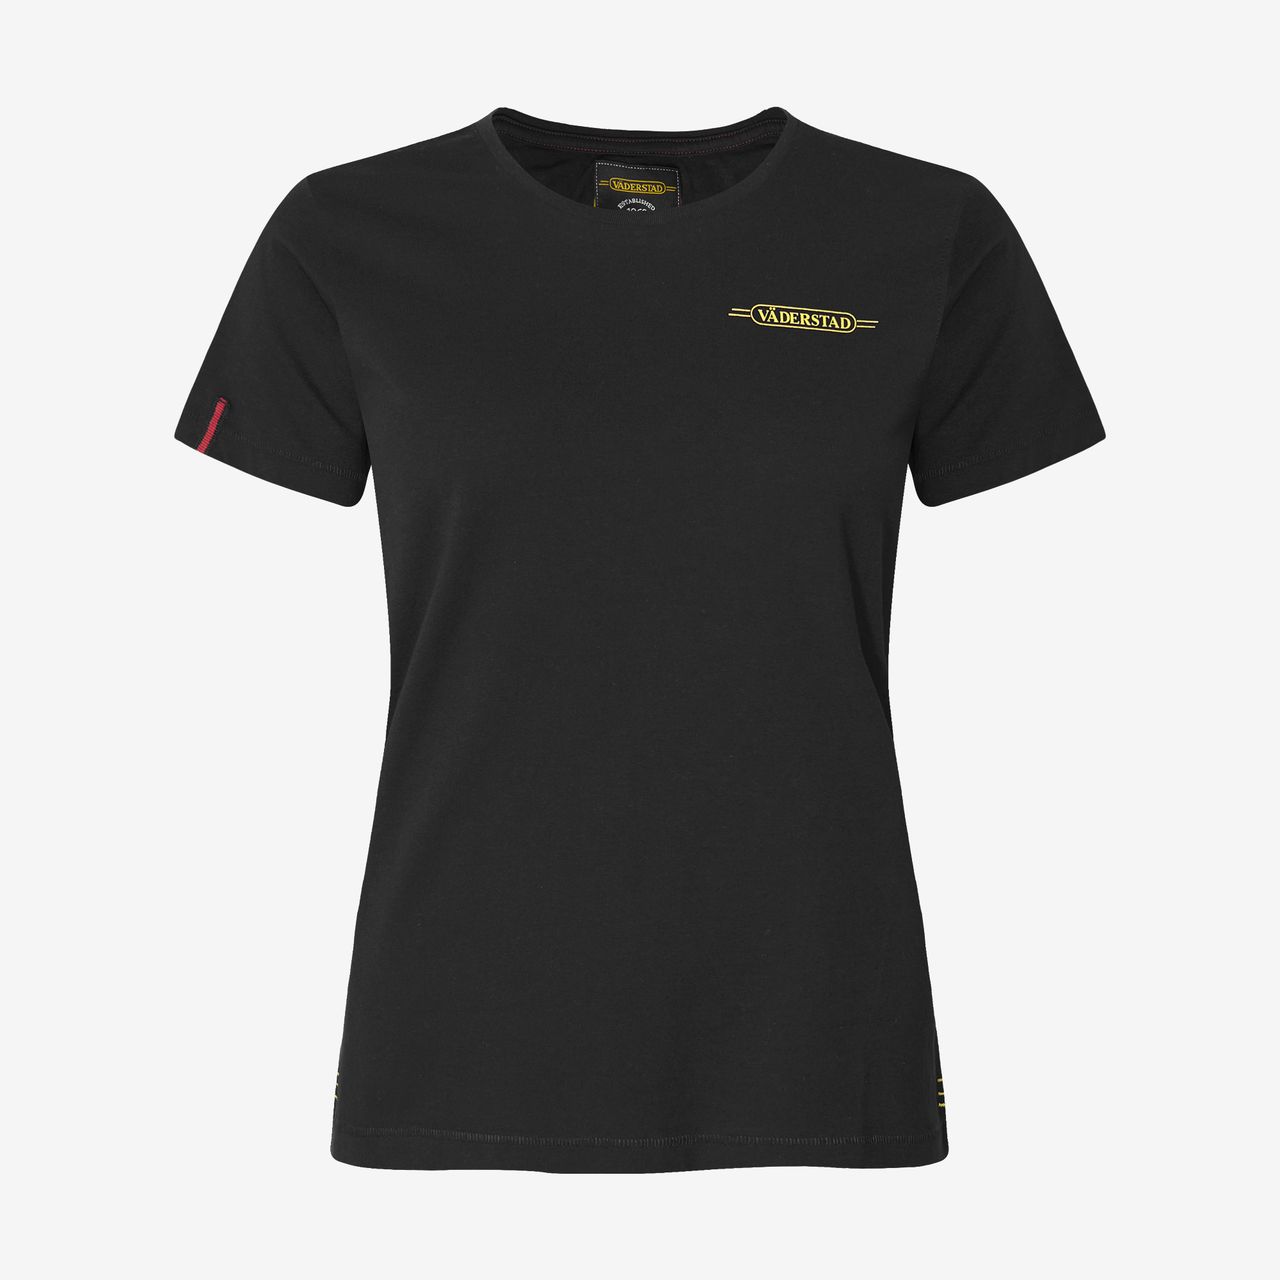 T-shirt black (M-XL)